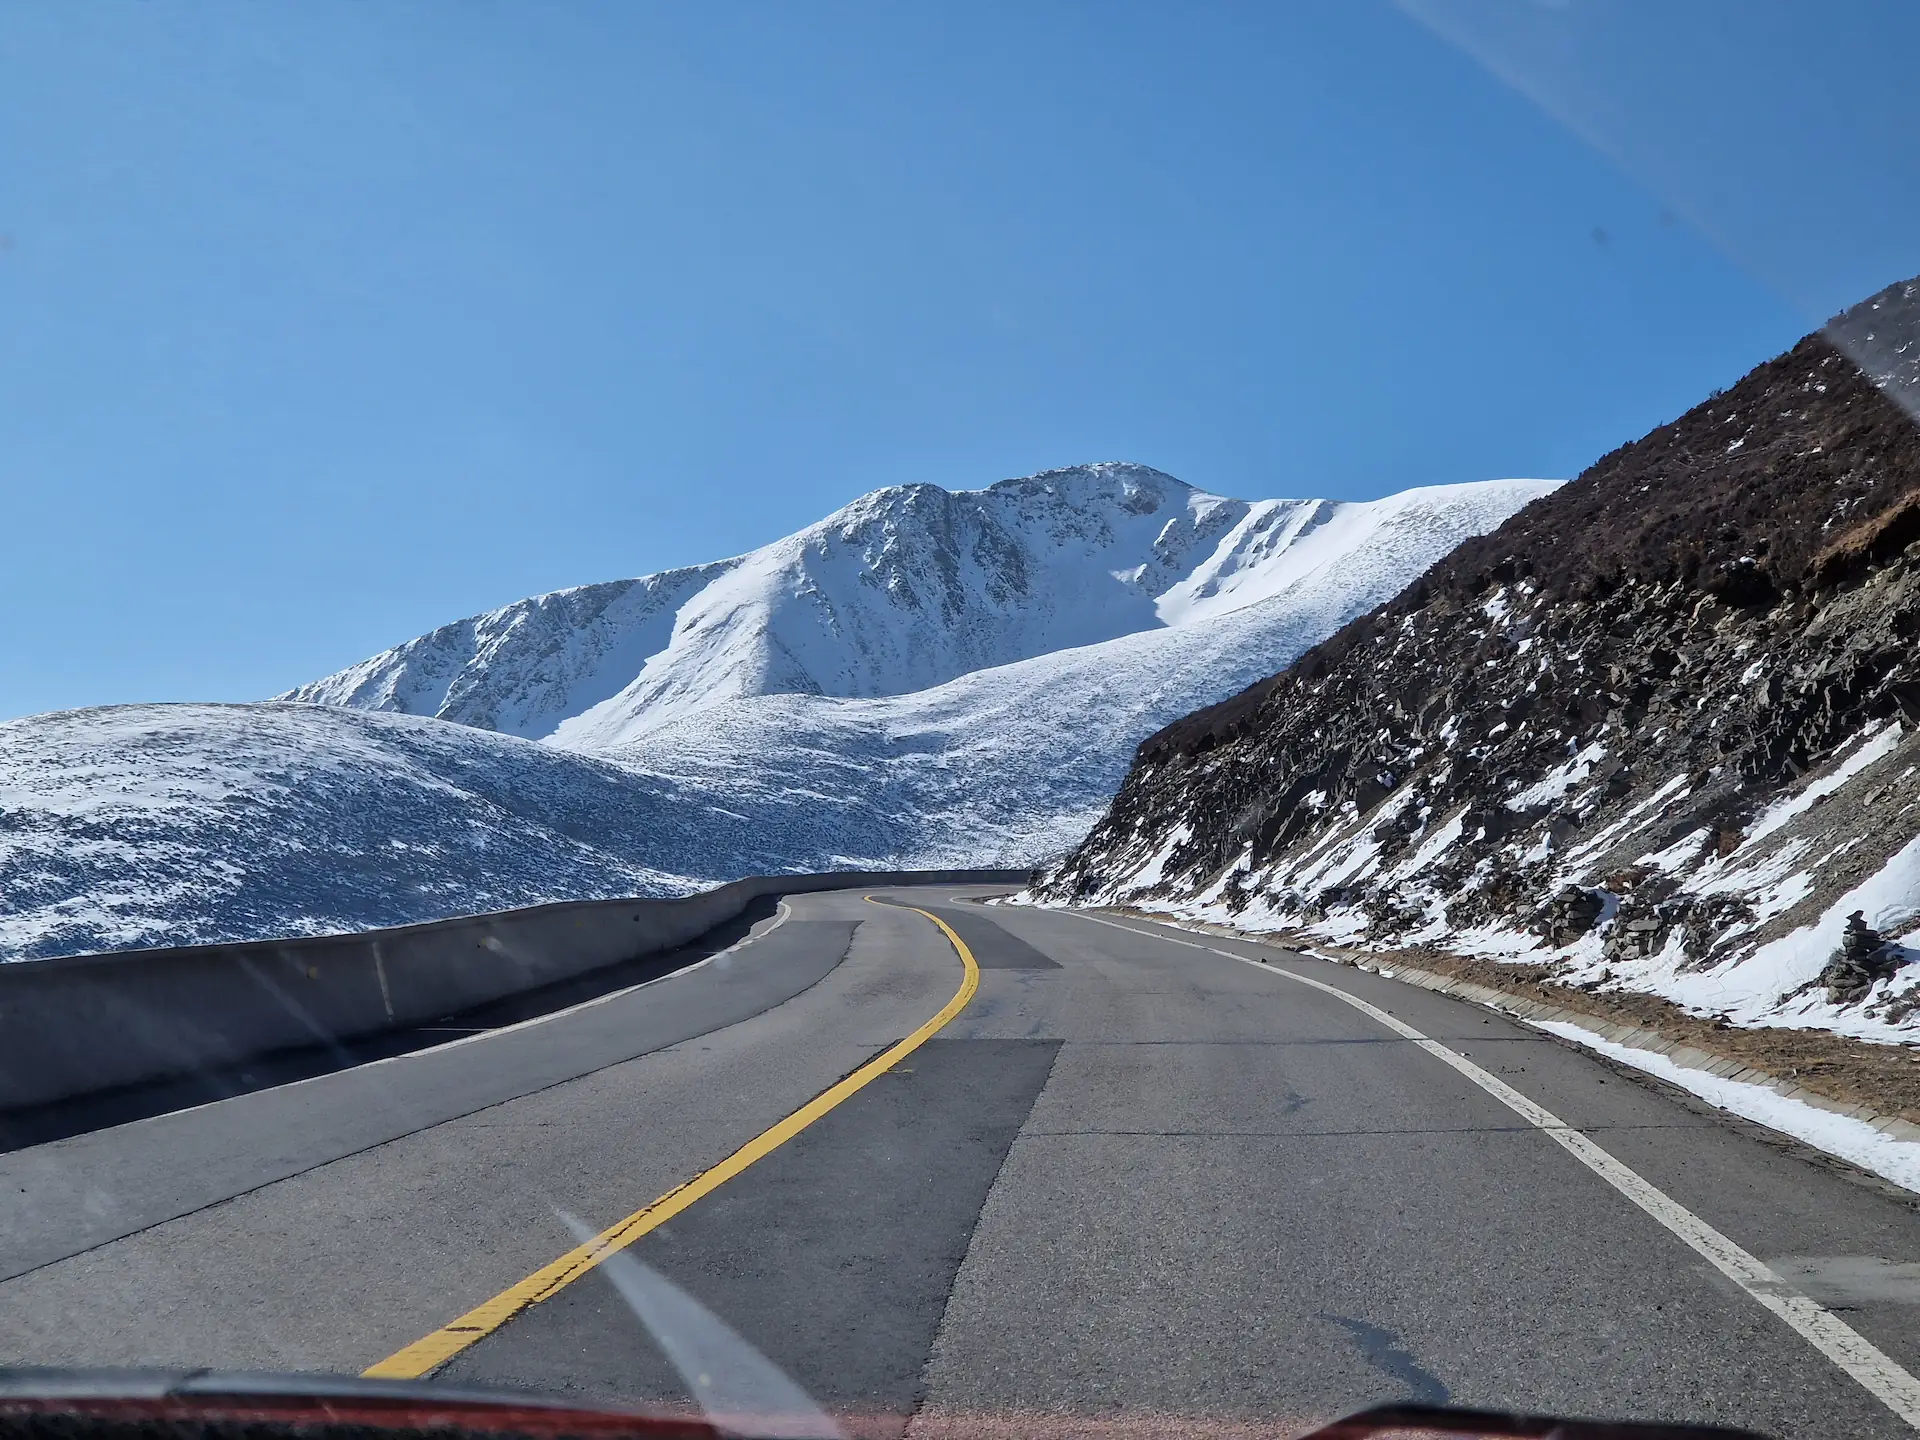 La route toujours vide et une autre montagne enneigée